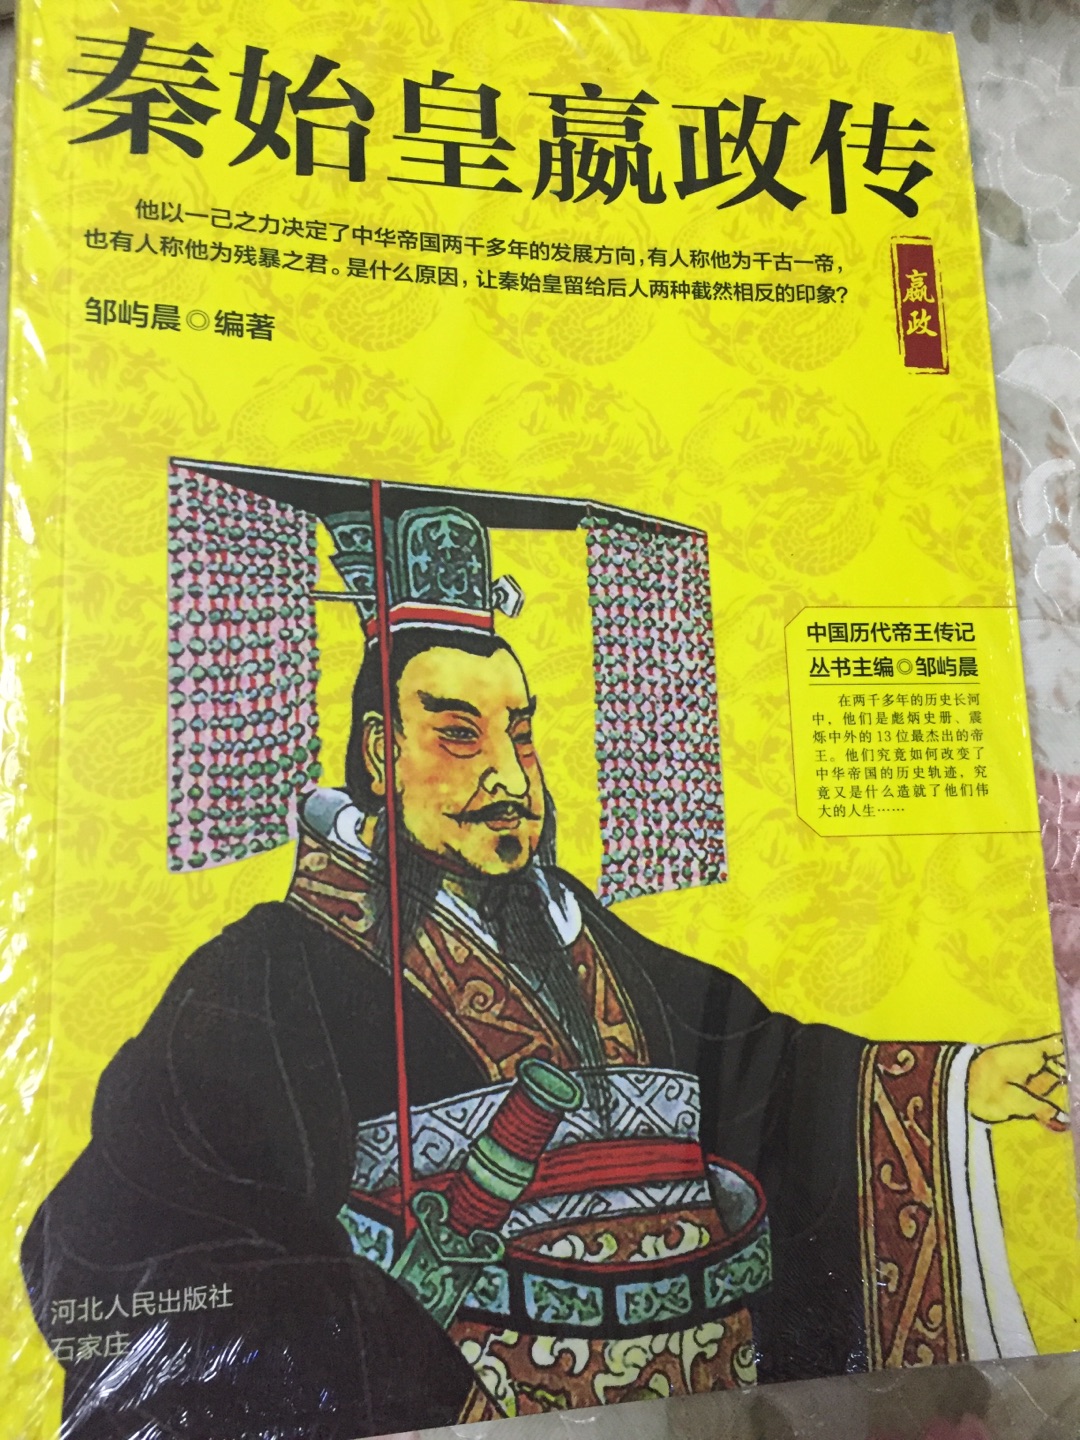 有塑封16开，中国帝王传记之一，值得推荐。